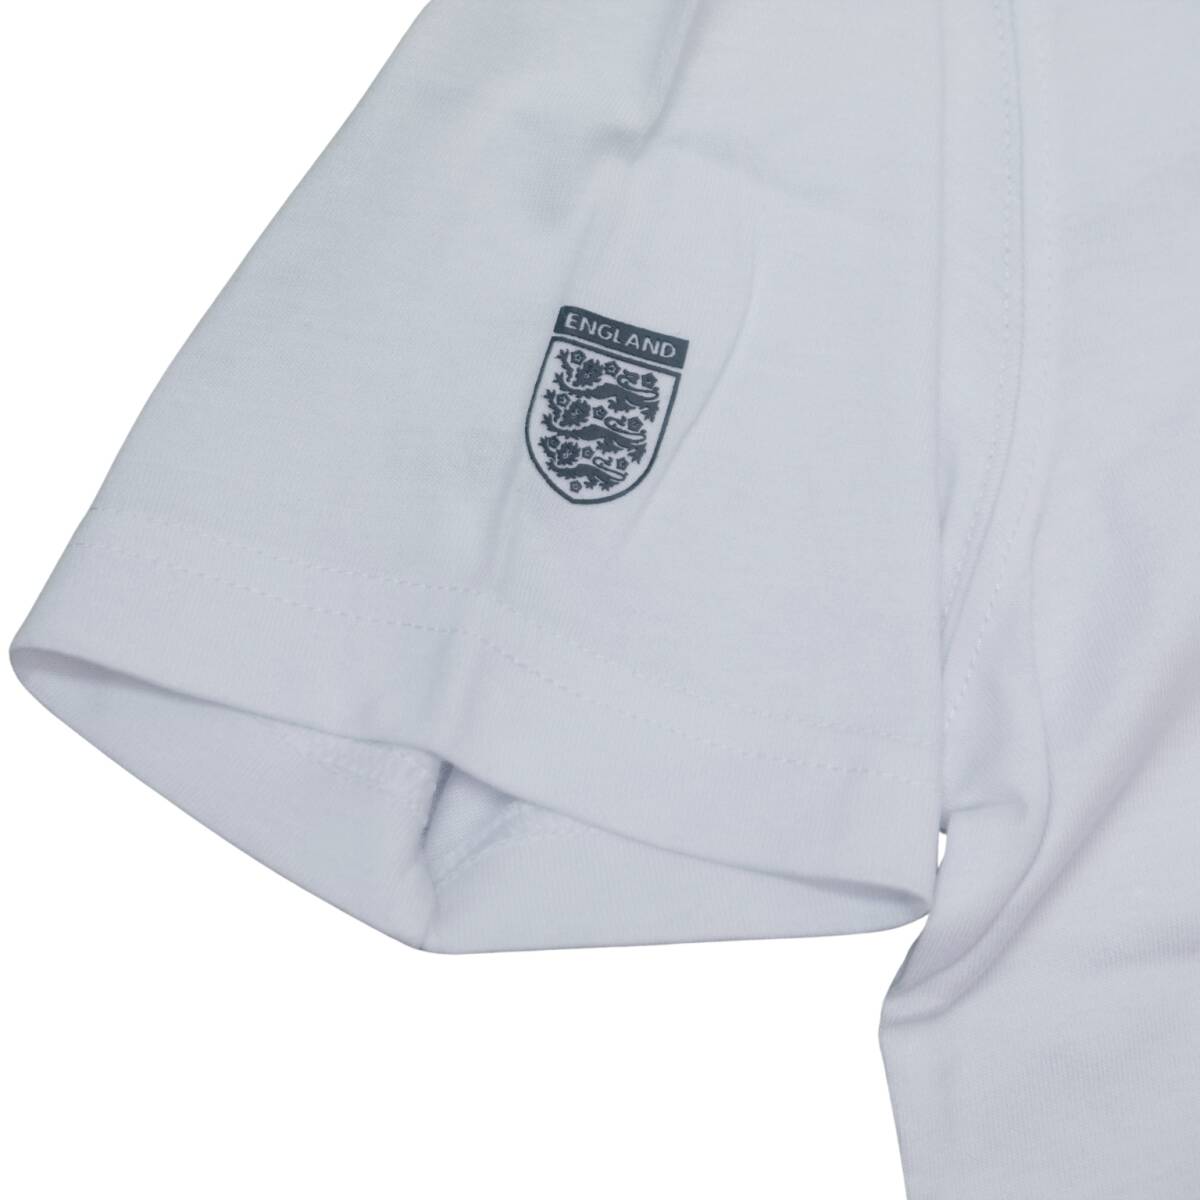 即決☆アンブロ Tシャツ Lサイズ イングランド代表 テリーブッチャー 送料無料 貴重 アンブロモデル 国内正規品